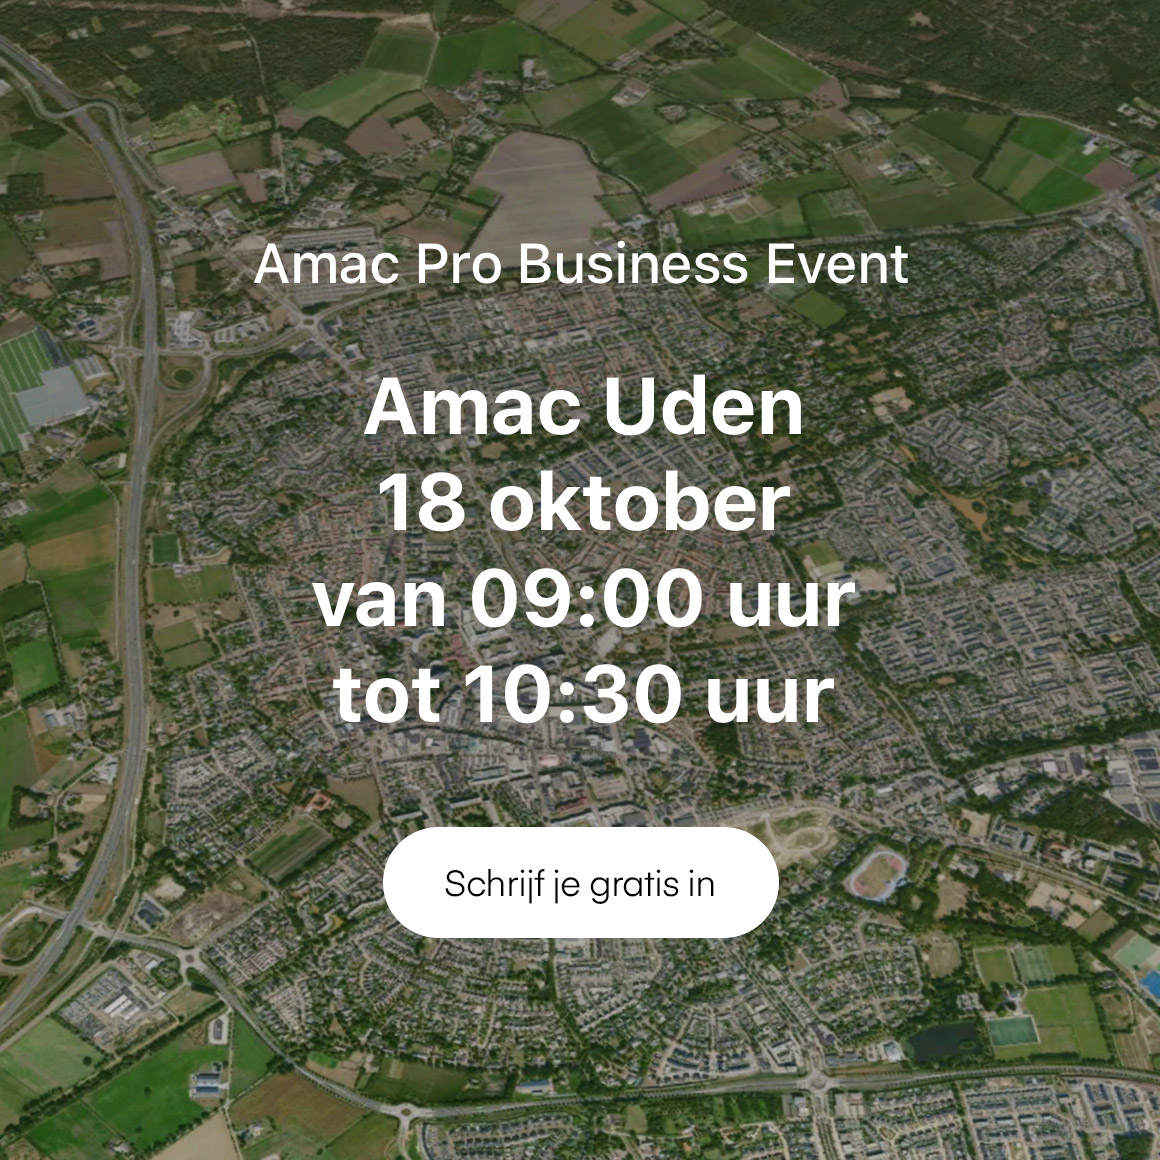 Amac Pro Business Event Uden